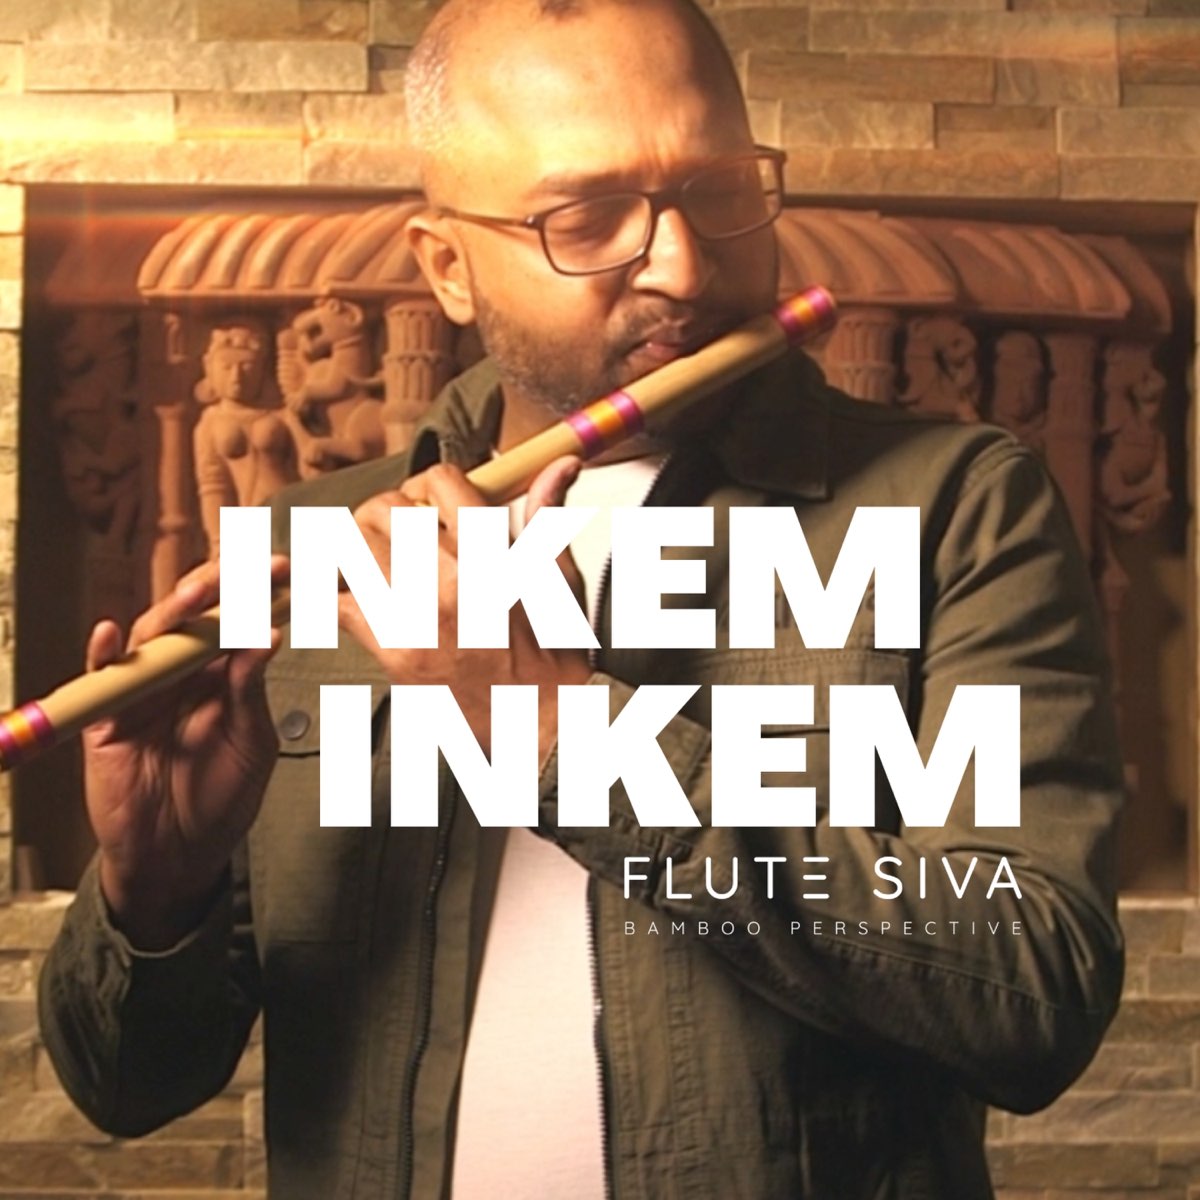 Inkem Inkem (Flute) - Single - Album by Flute Siva - Apple Music